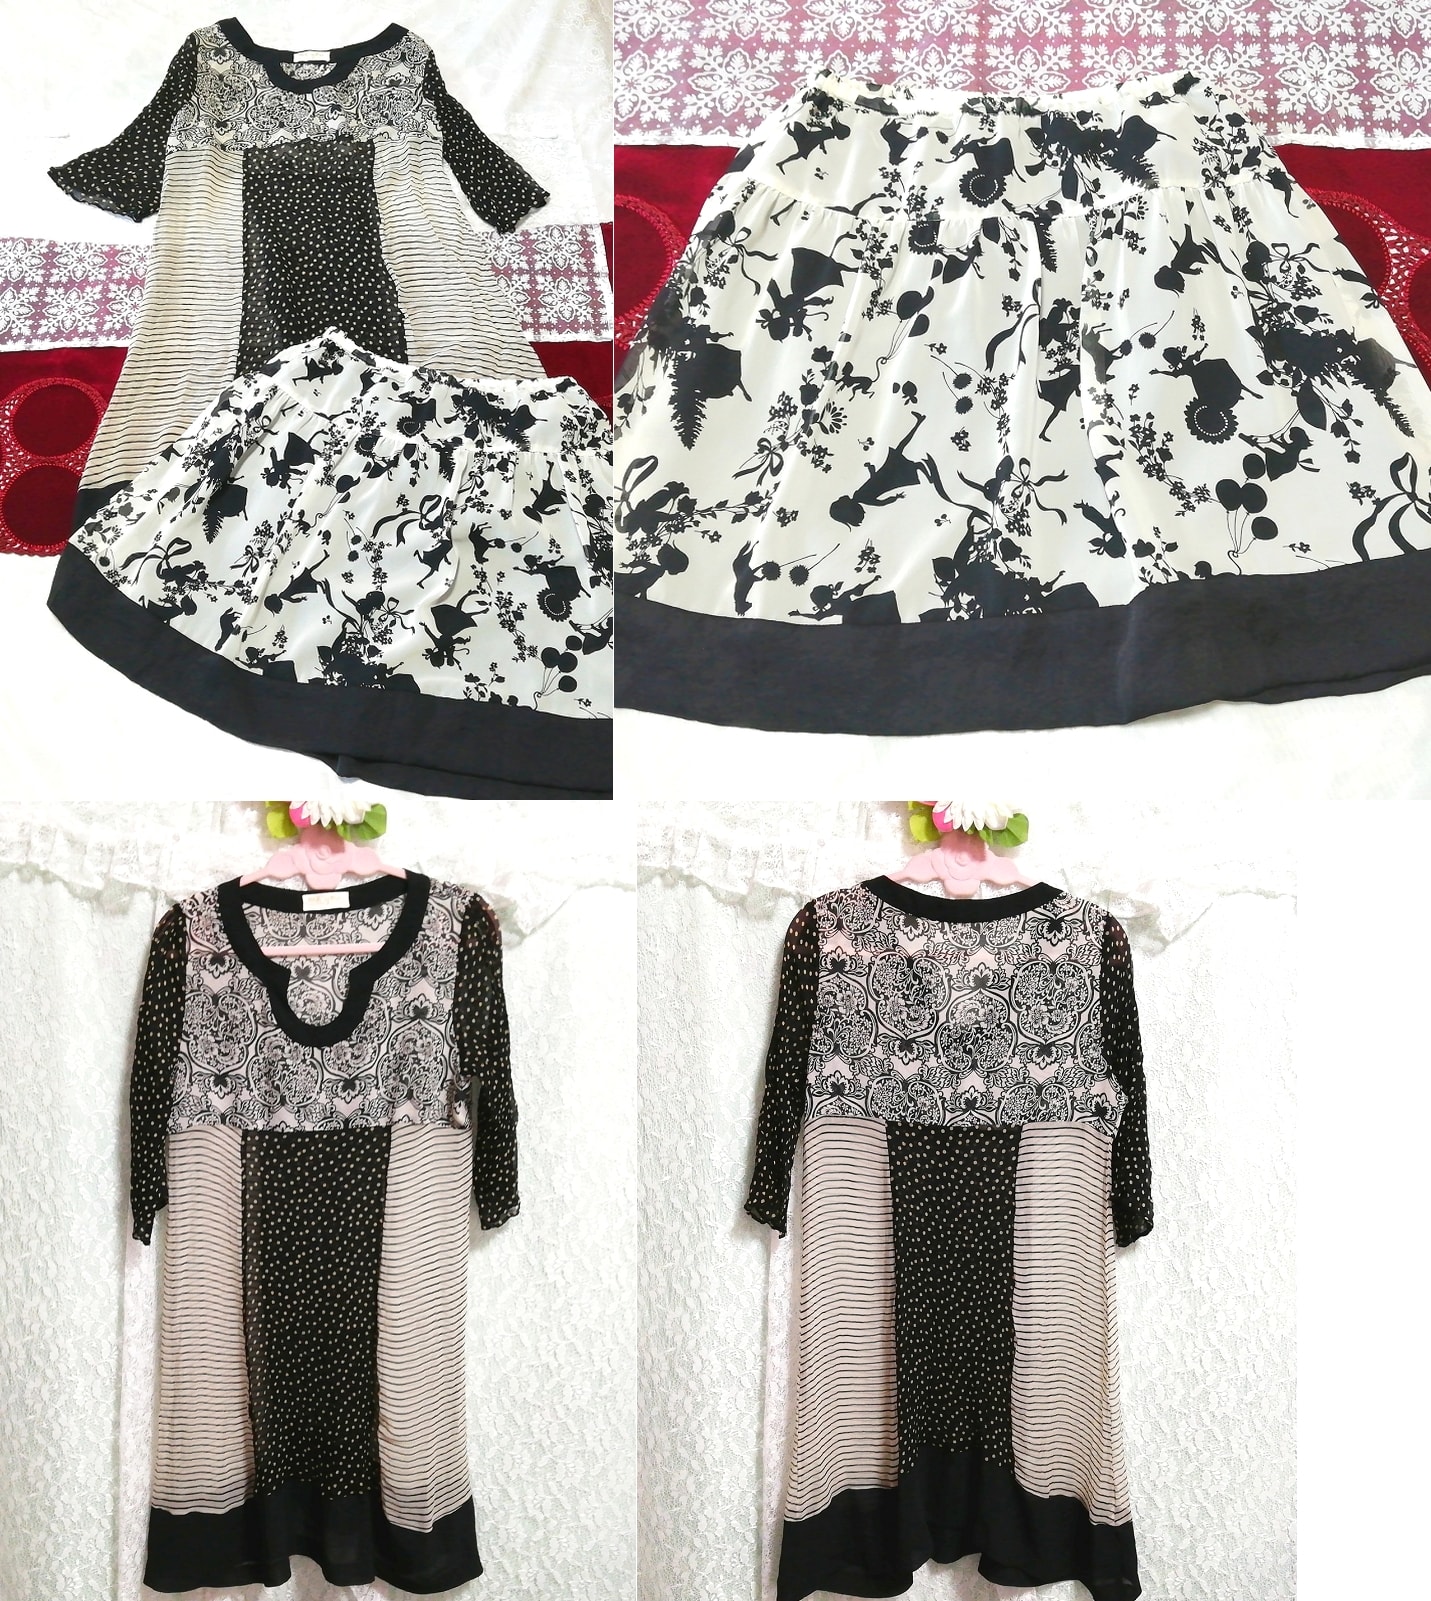 Schwarz-weißer, durchsichtiger Tunika-Negligé-Nachthemd aus Chiffon mit Ausschnitt-Silhouette, Minirock, 2 Stück, Mode, Frauenmode, Nachtwäsche, Pyjama